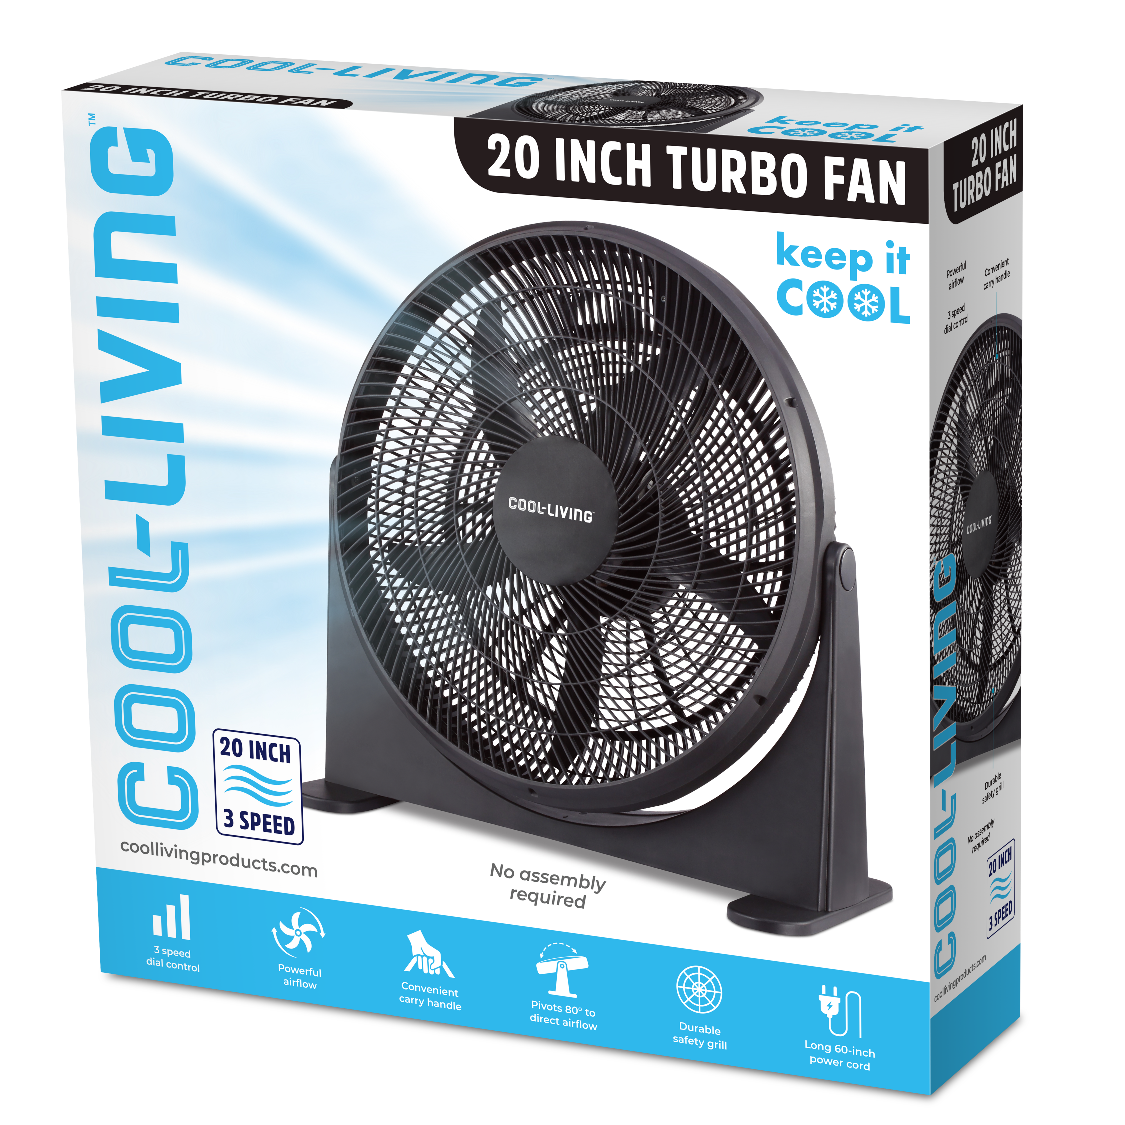 Cool-Living 20-inch Turbo Fan, 3 Speed